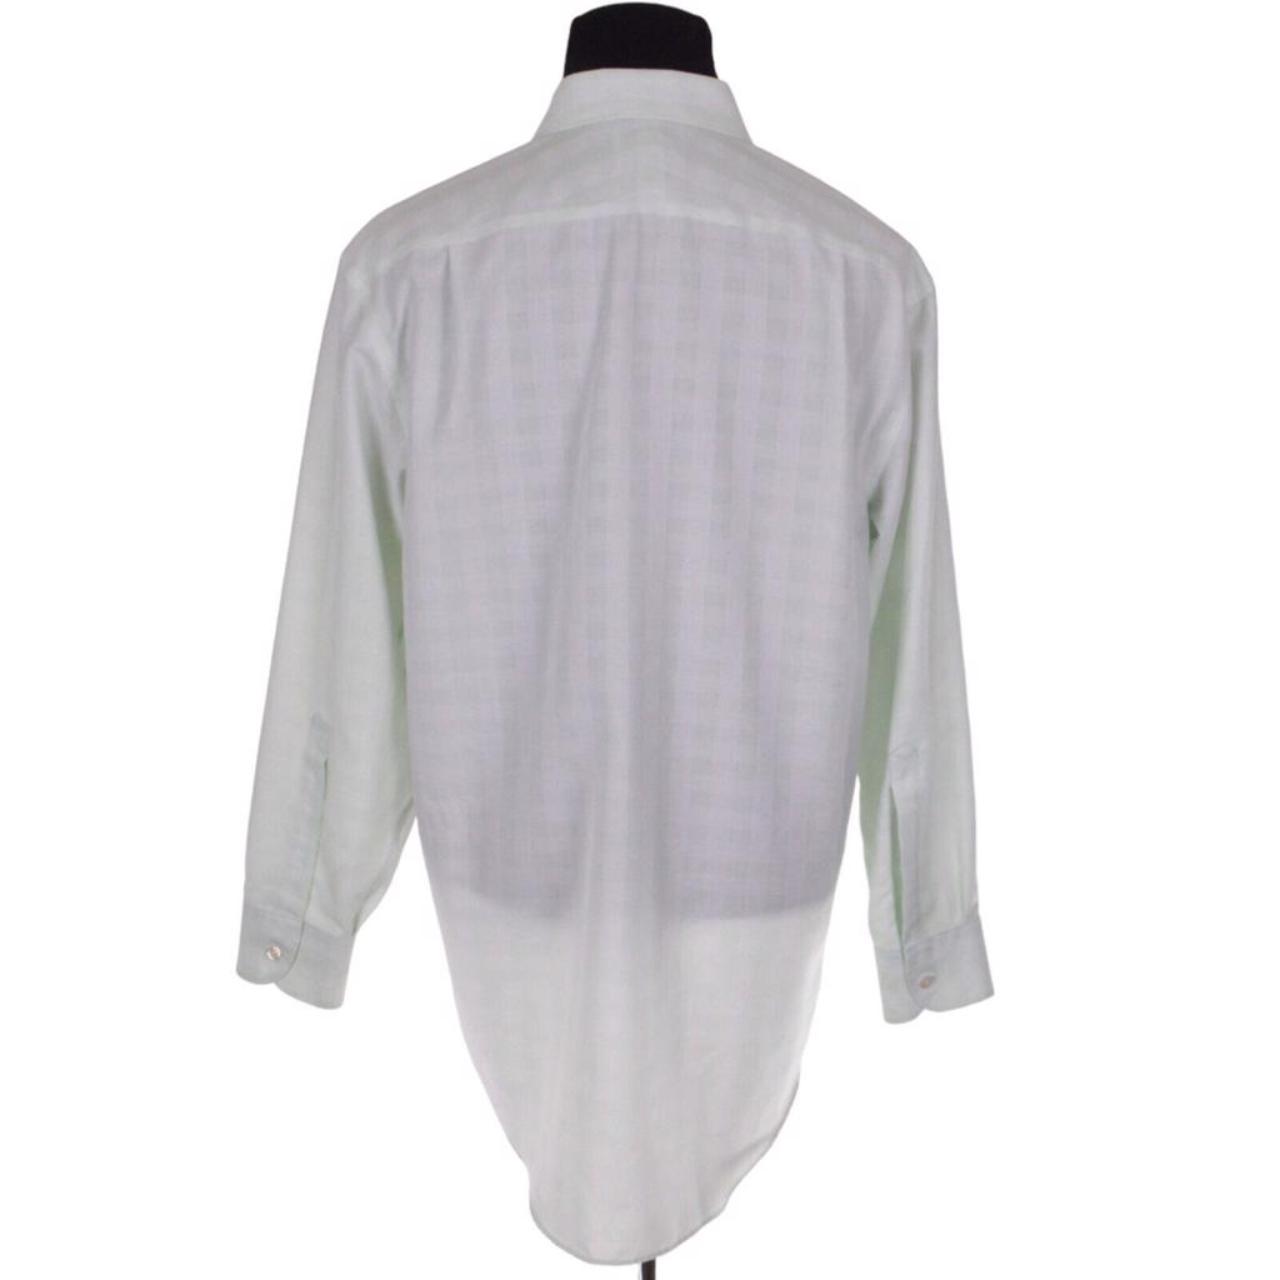 Charles Tyrwhitt Men's Green and White Shirt (2)